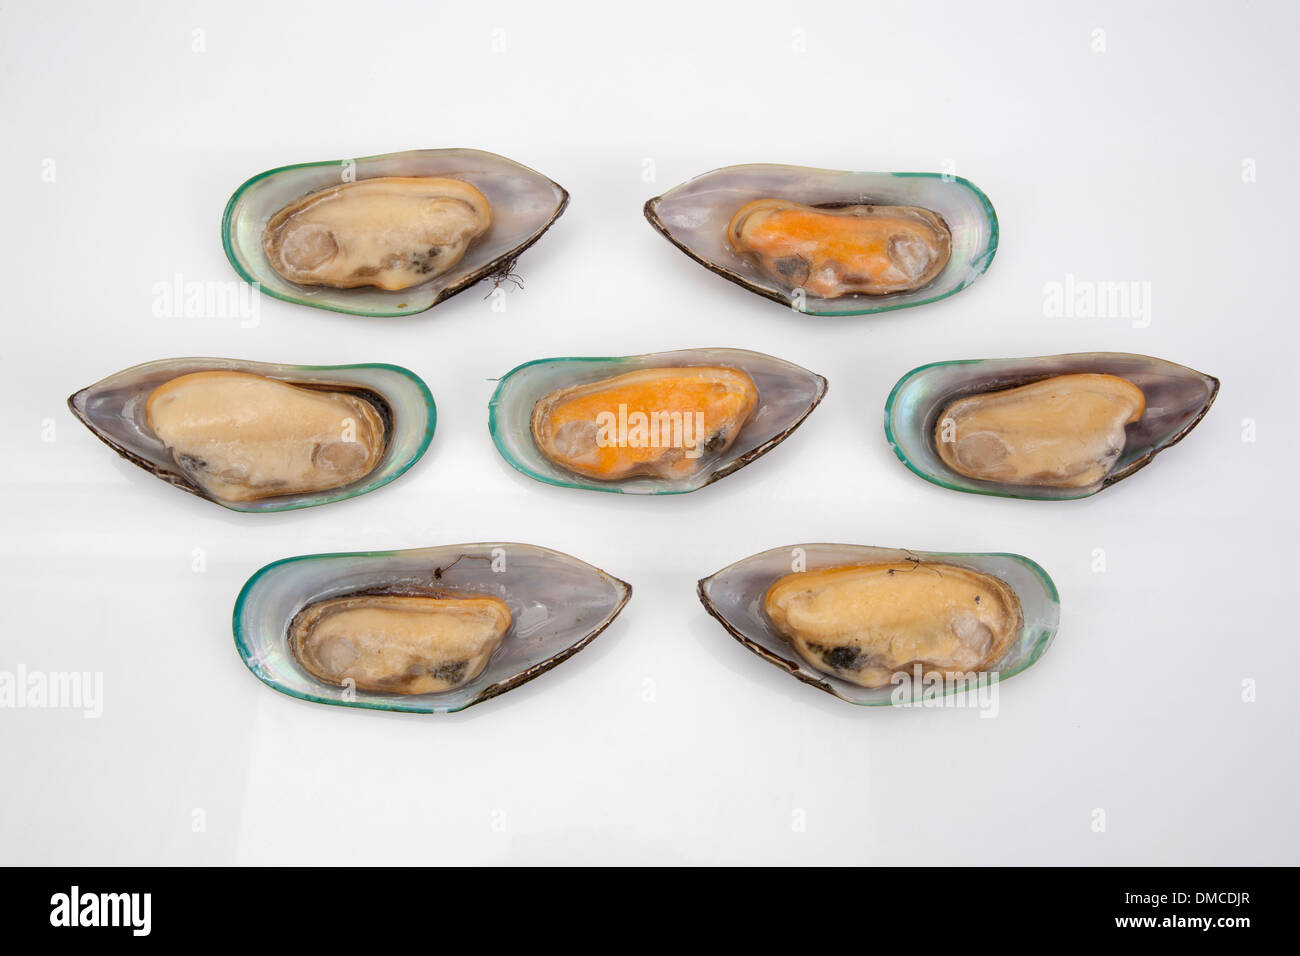 Clam Shell Rohkost ungekochte Meeresfrüchte essen Produkt verkaufen  Restaurants Küche Ernährung Platte Teller Essen kochen Koch Vielzahl Kunst  kaufen Stockfotografie - Alamy